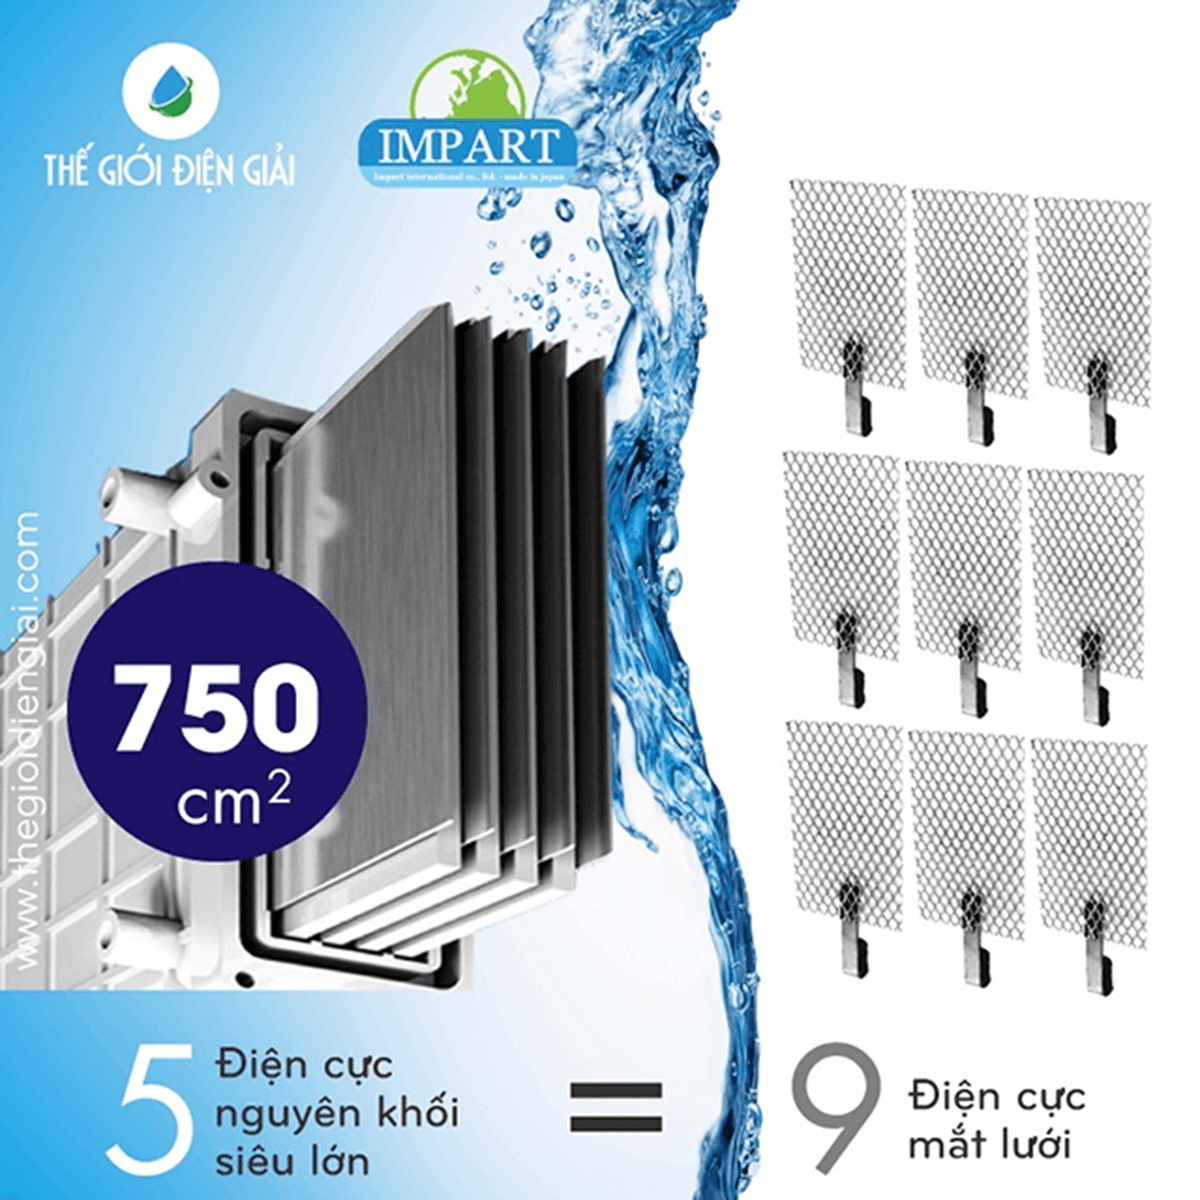 Máy lọc nước iON kiềm Impart có tổng diện tích tiếp xúc tấm điện cực đến 750 cm2